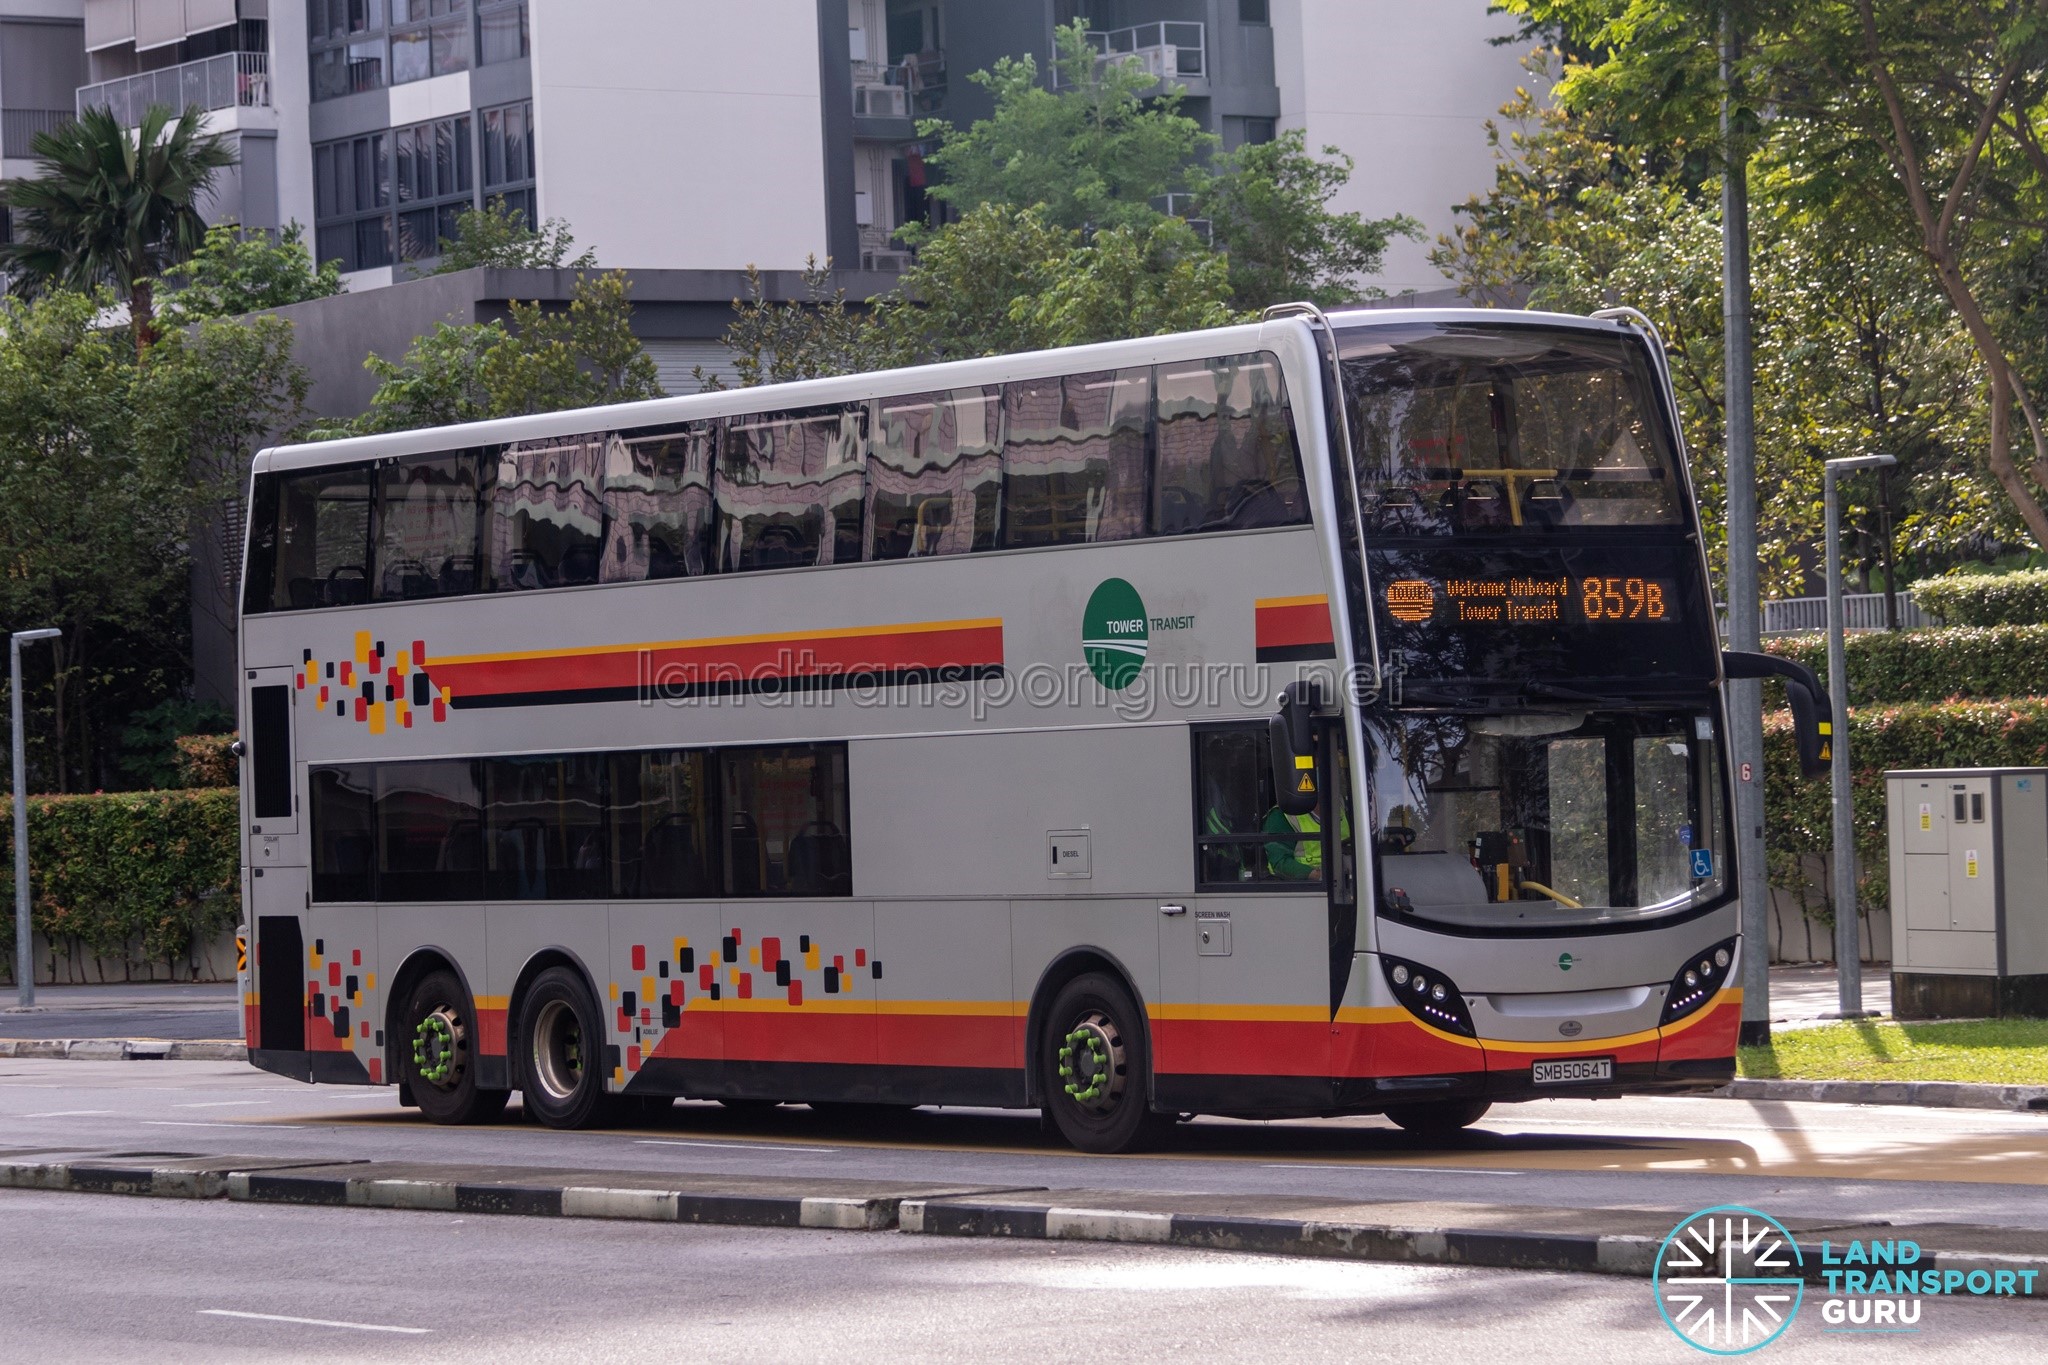 Tower Transit Bus Service 859B